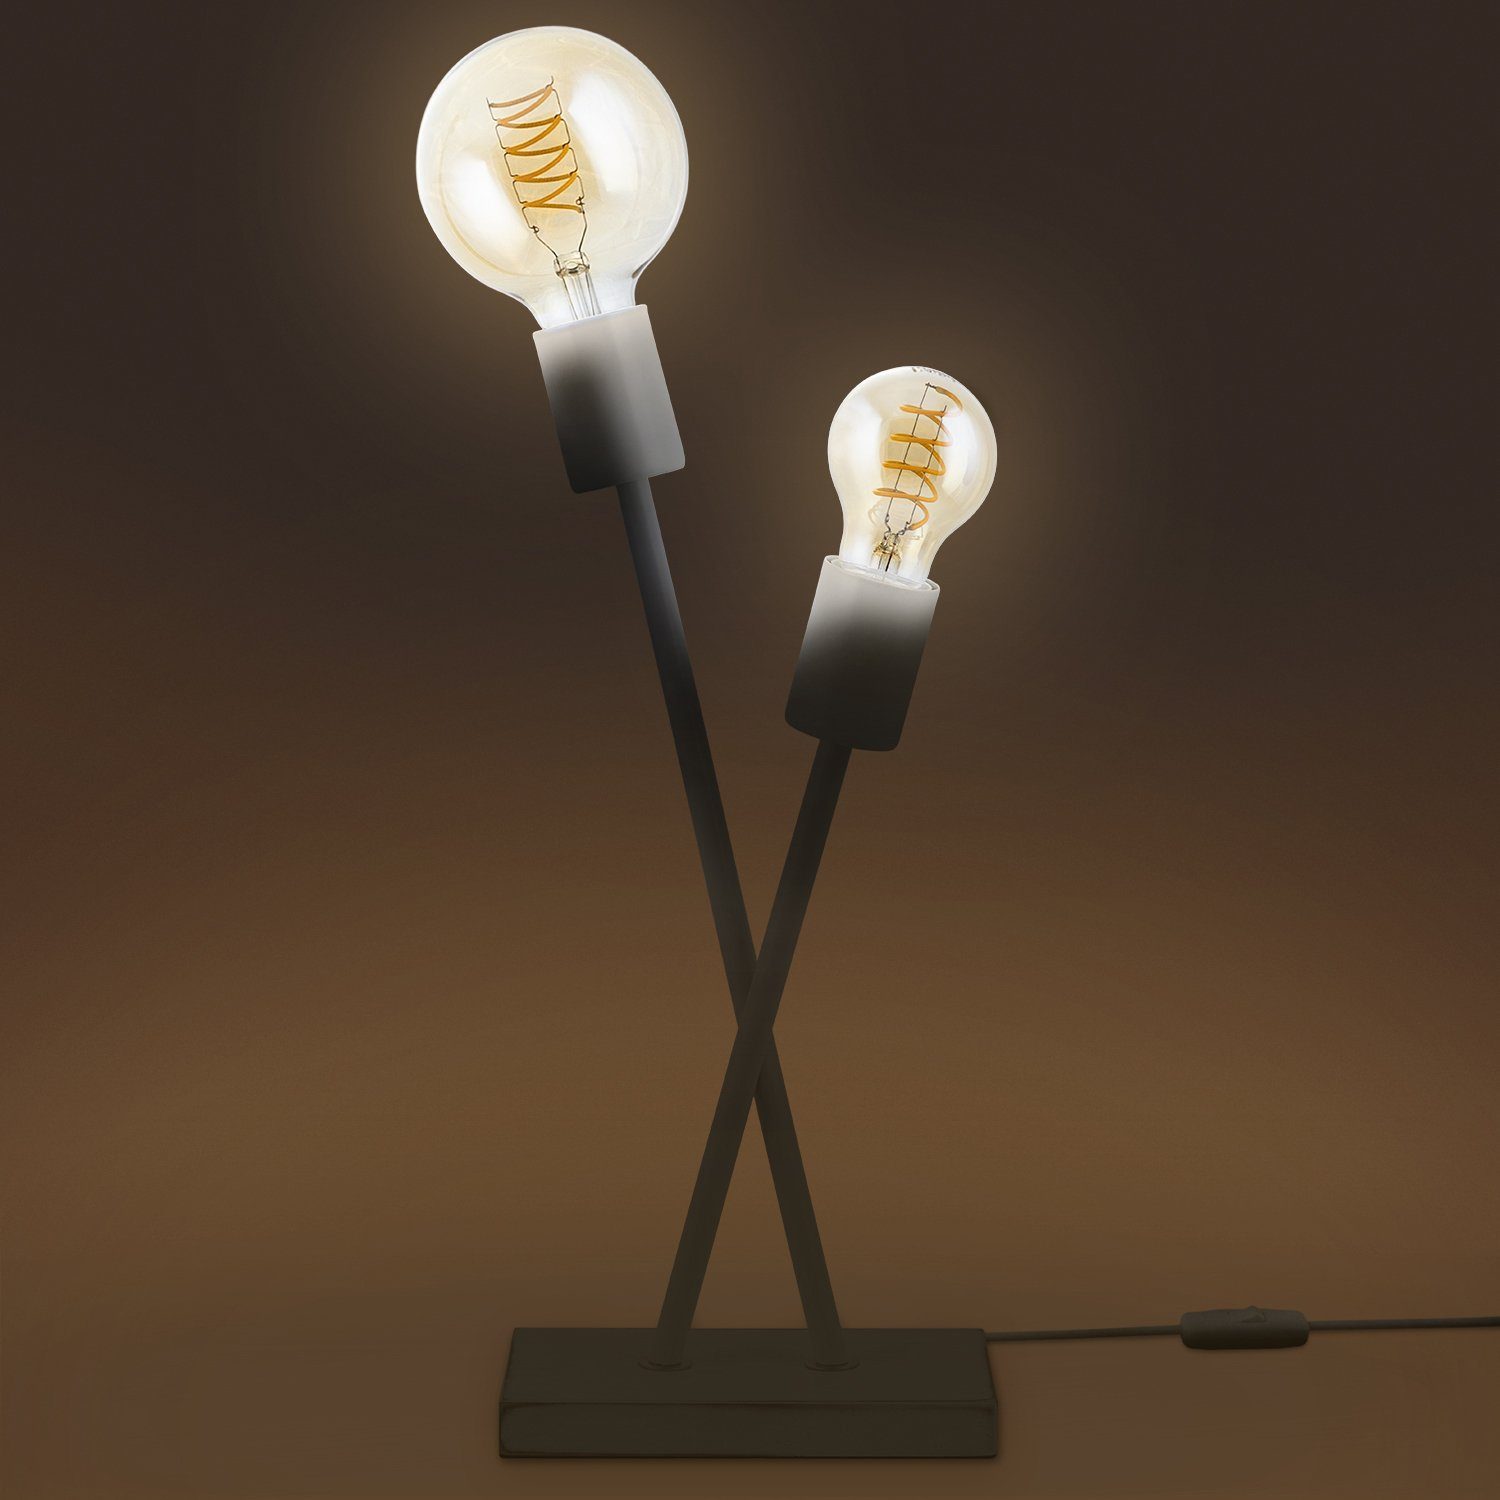 IKS, Paco Industrial Retro LED Lampe Leuchtmittel, Home ohne E27 Vintage Stehlampe Tischleuchte Design Wohnzimmer